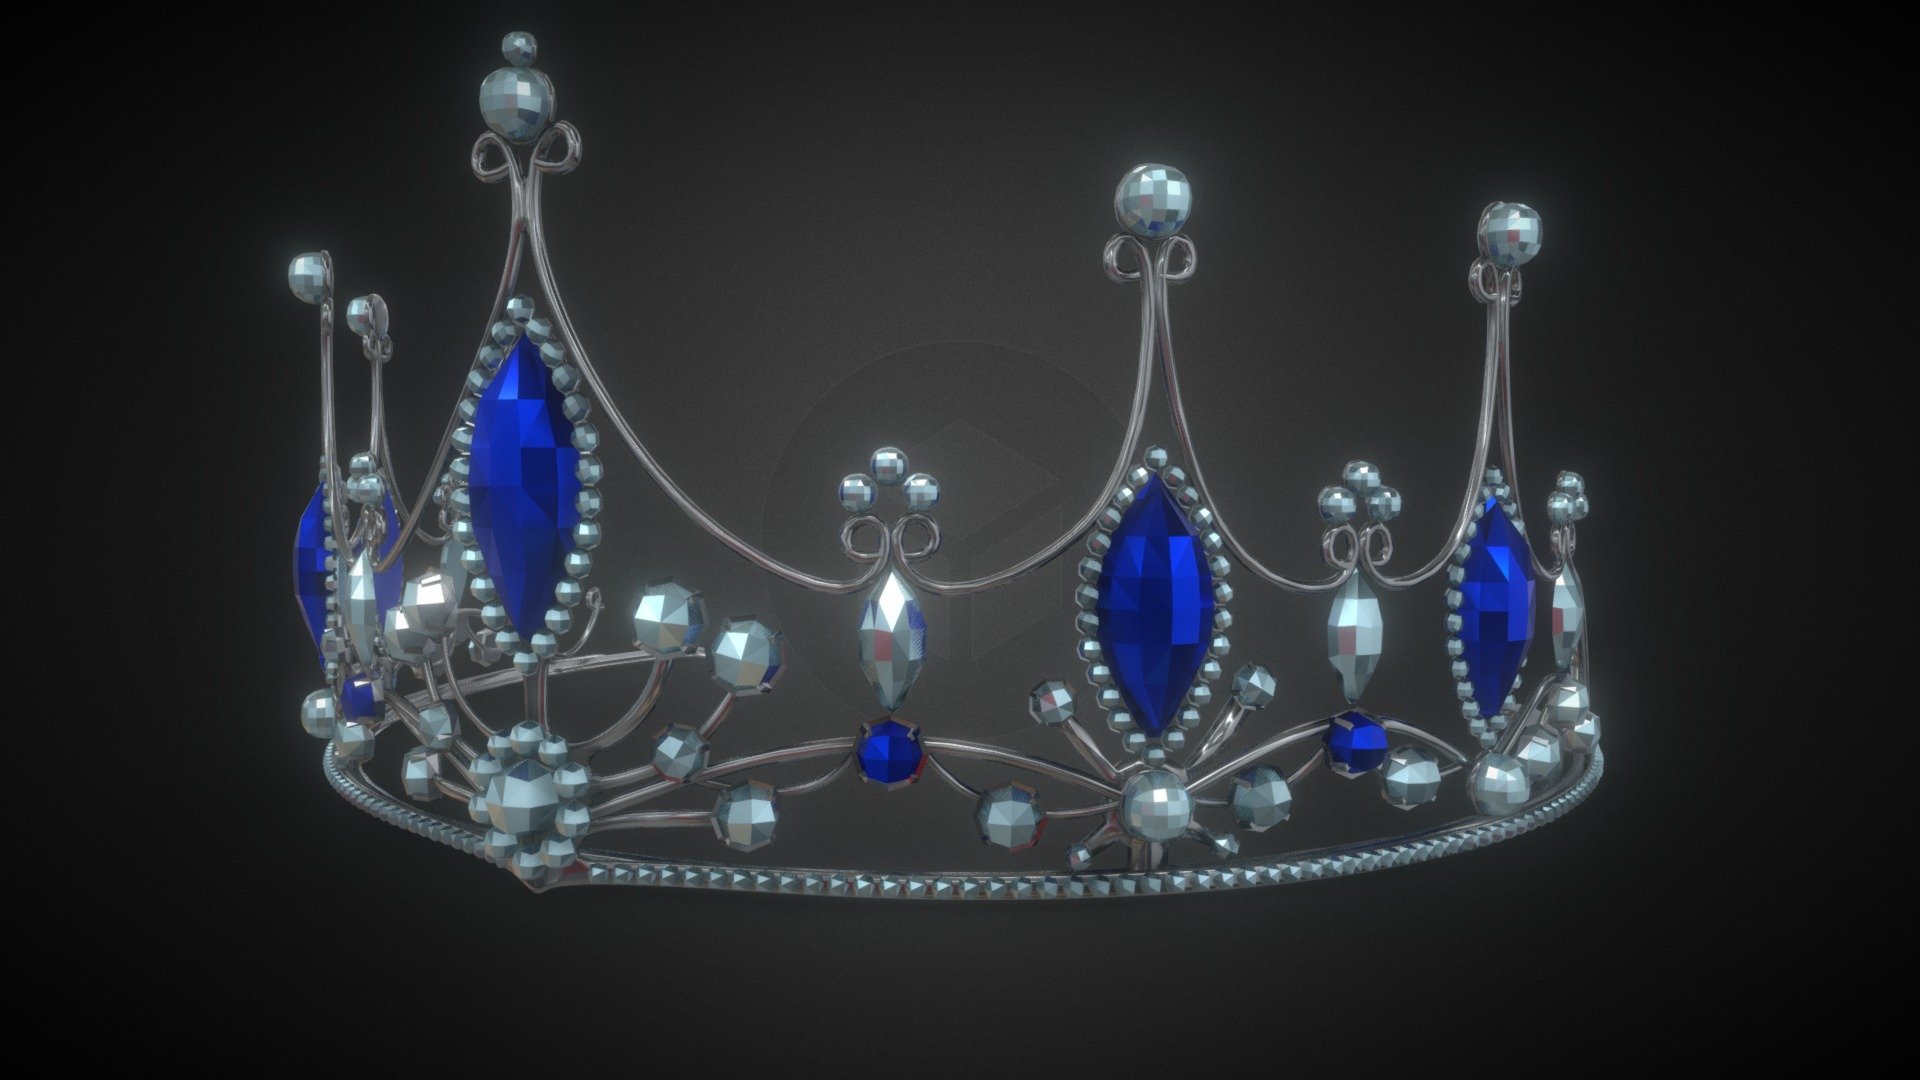 Princess crown - 3D model by Rbone3D 3d model